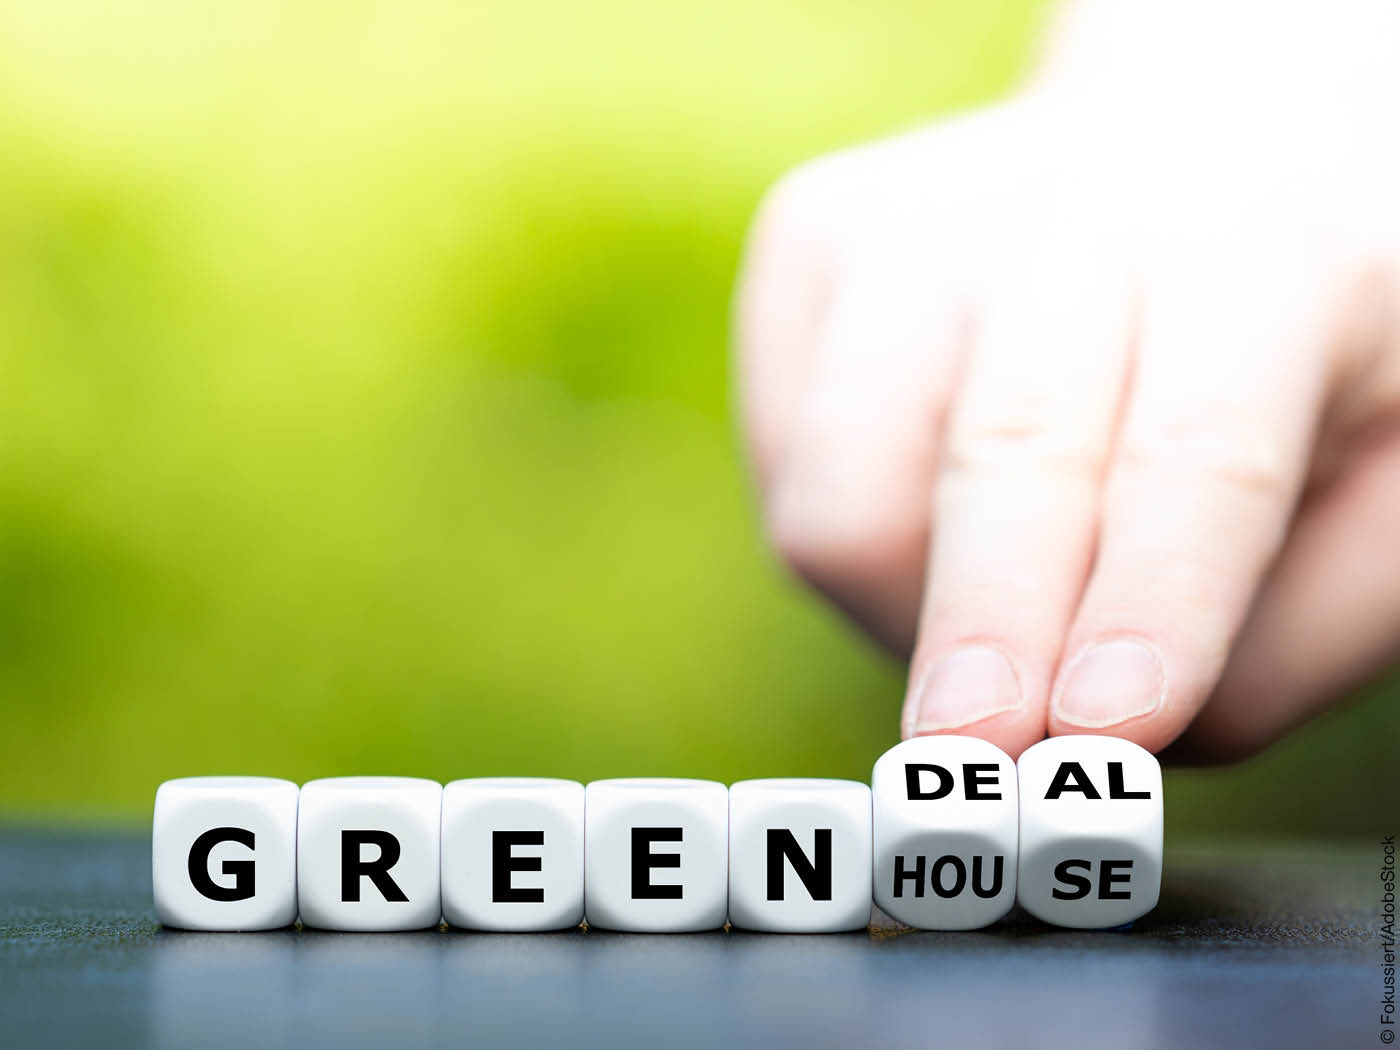 Buchstaben auf Würfelseiten, aus dem Wort "Greenhouse" wird "Green Deal"